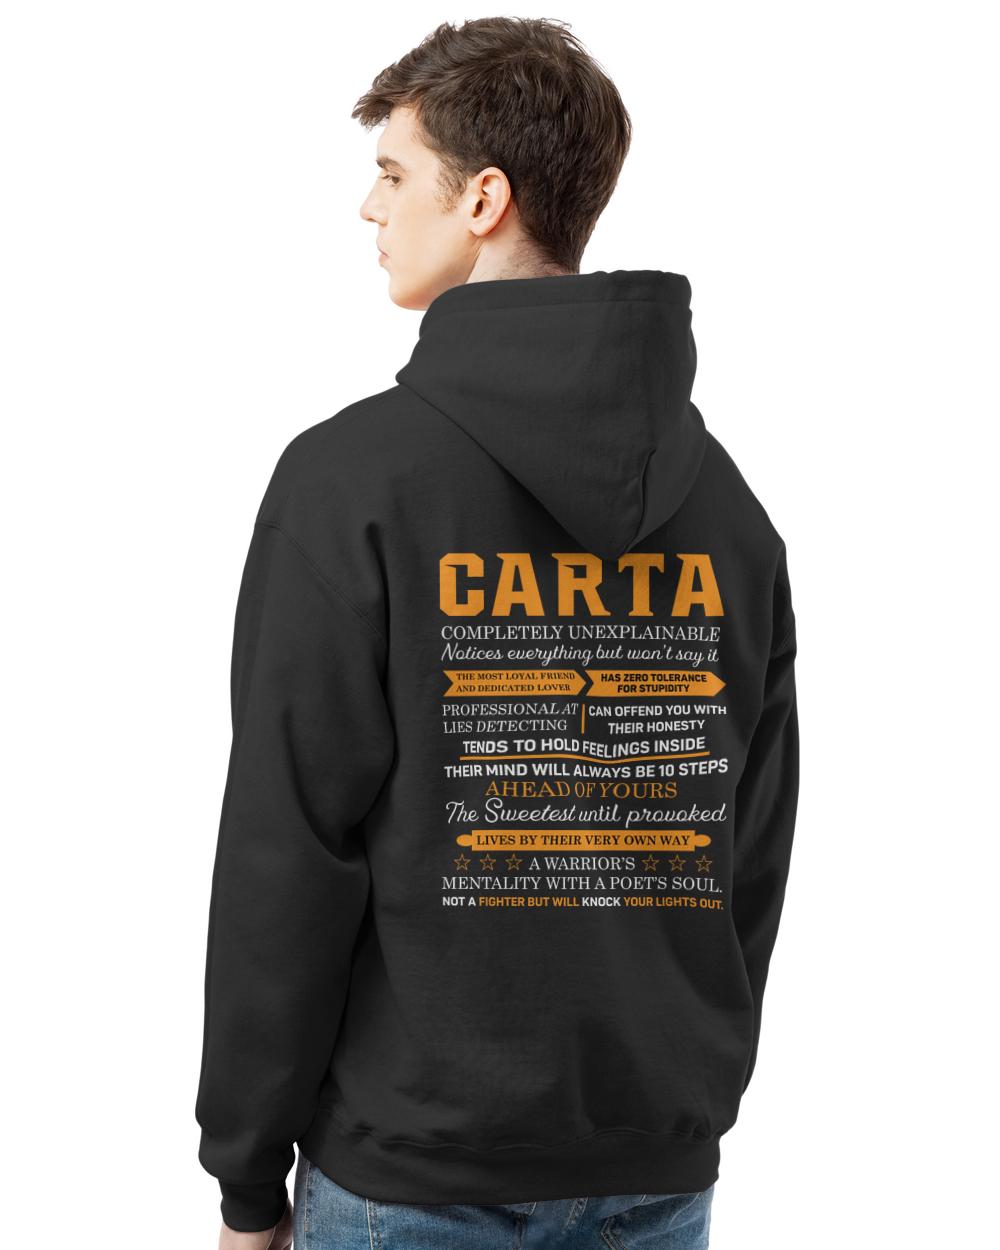 CARTA-13K-N1-01